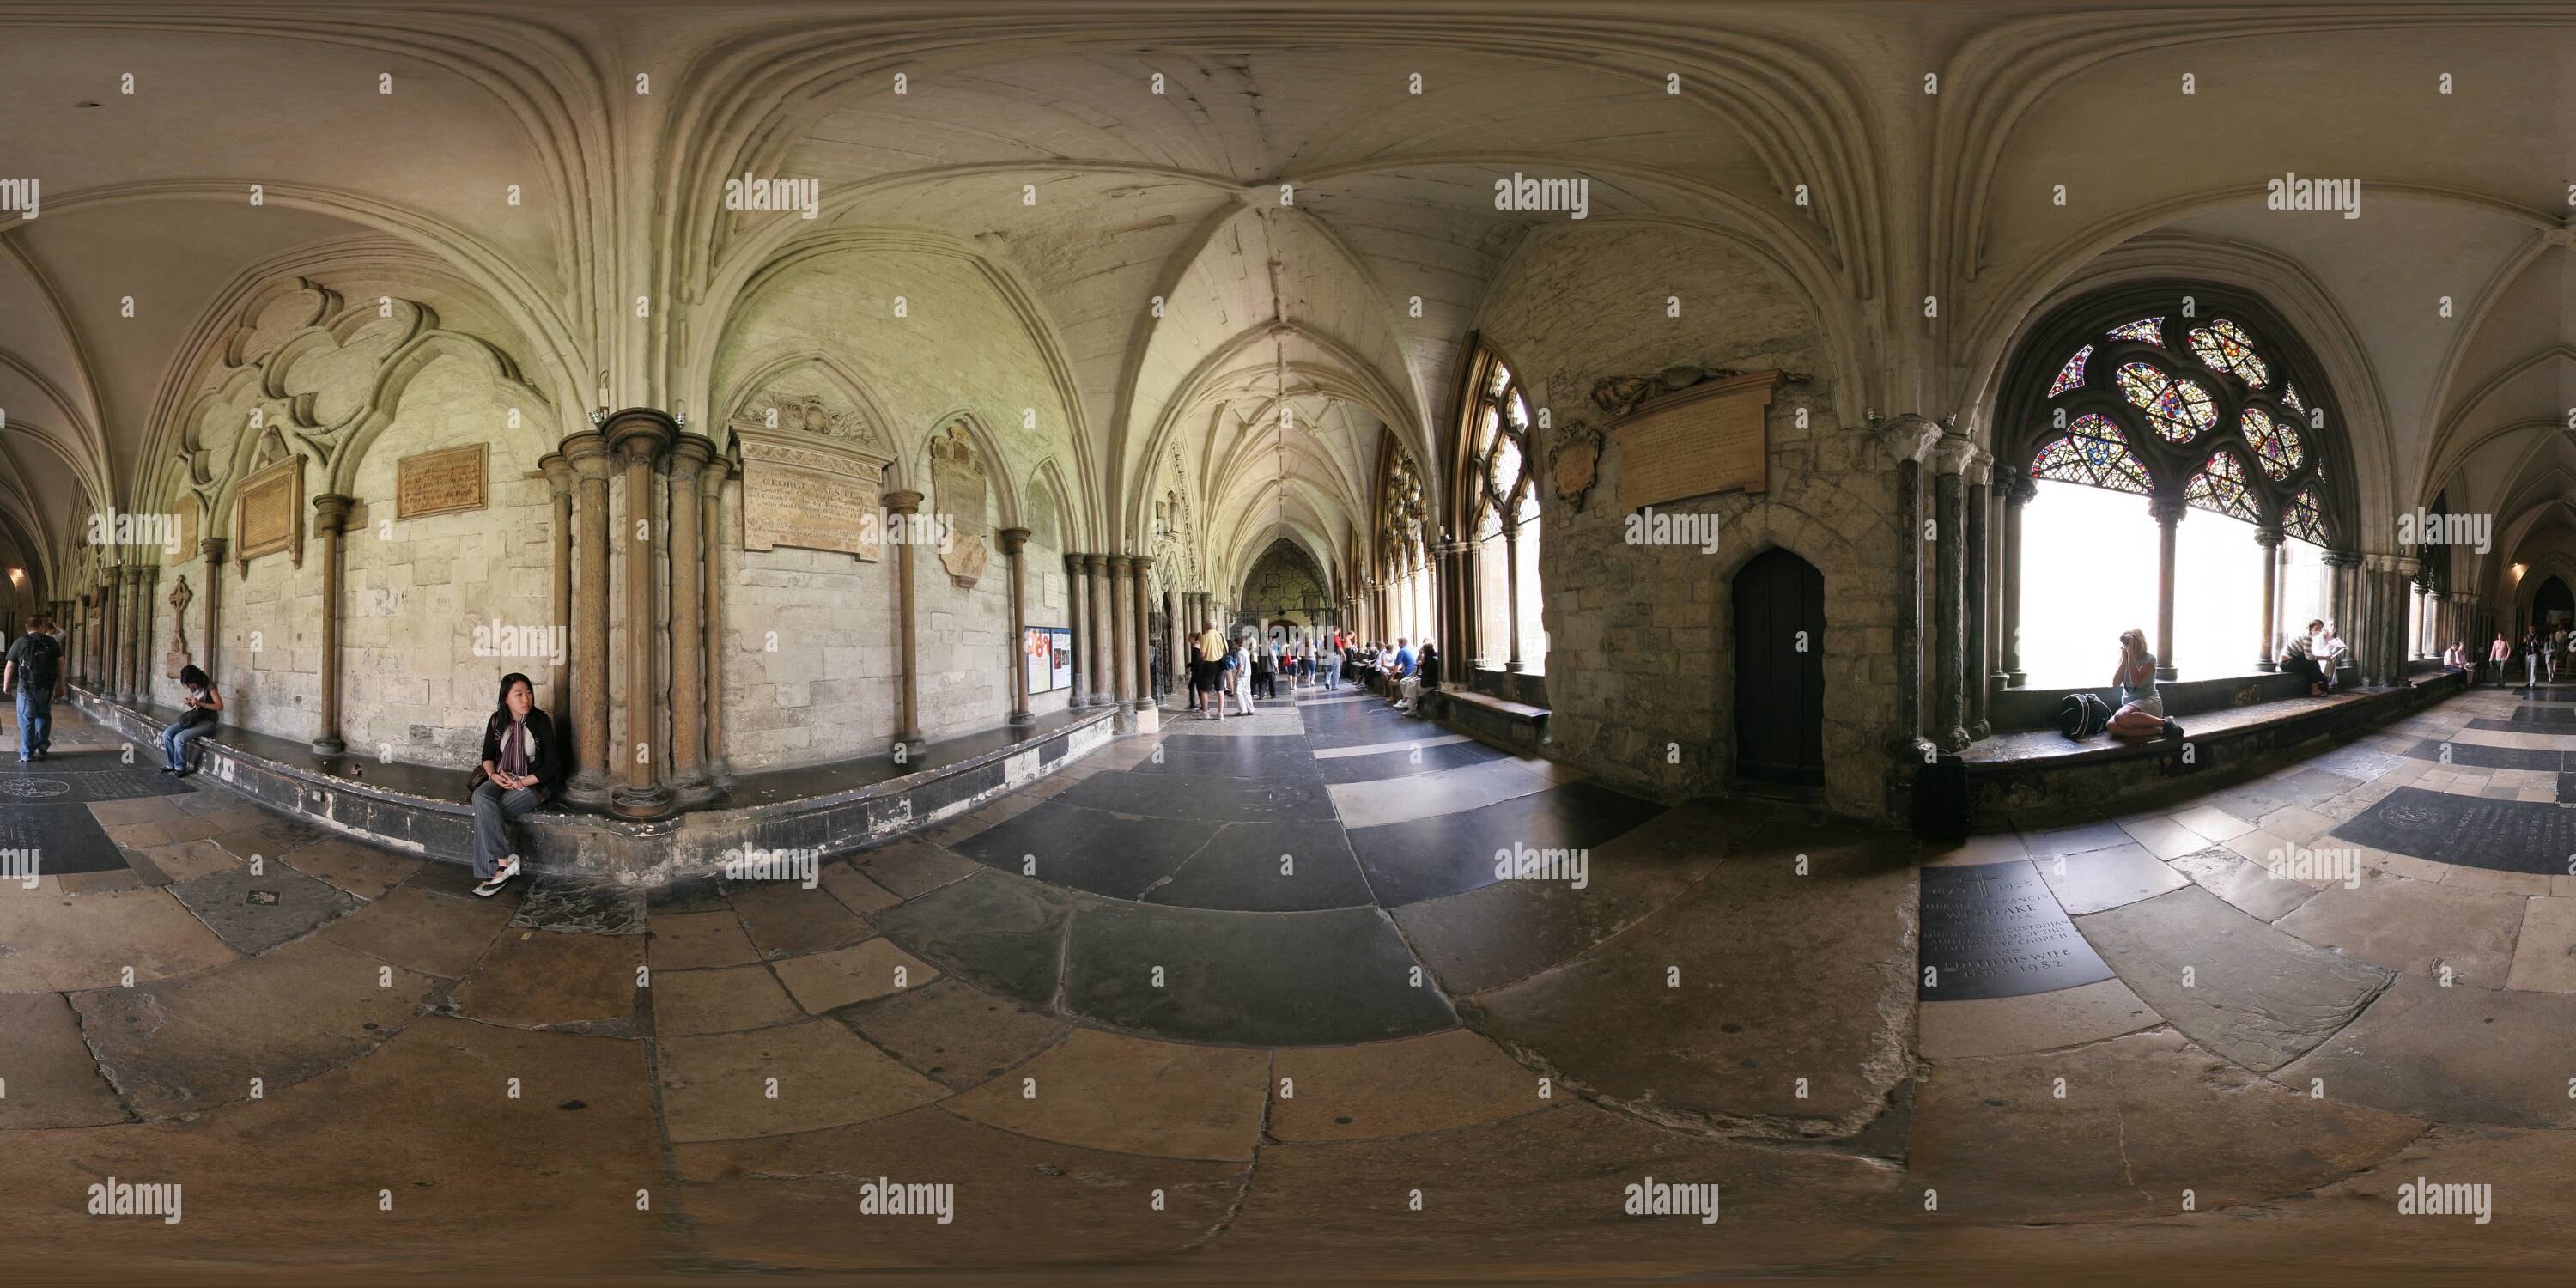 Vue panoramique à 360° de L'Abbaye de Westminster